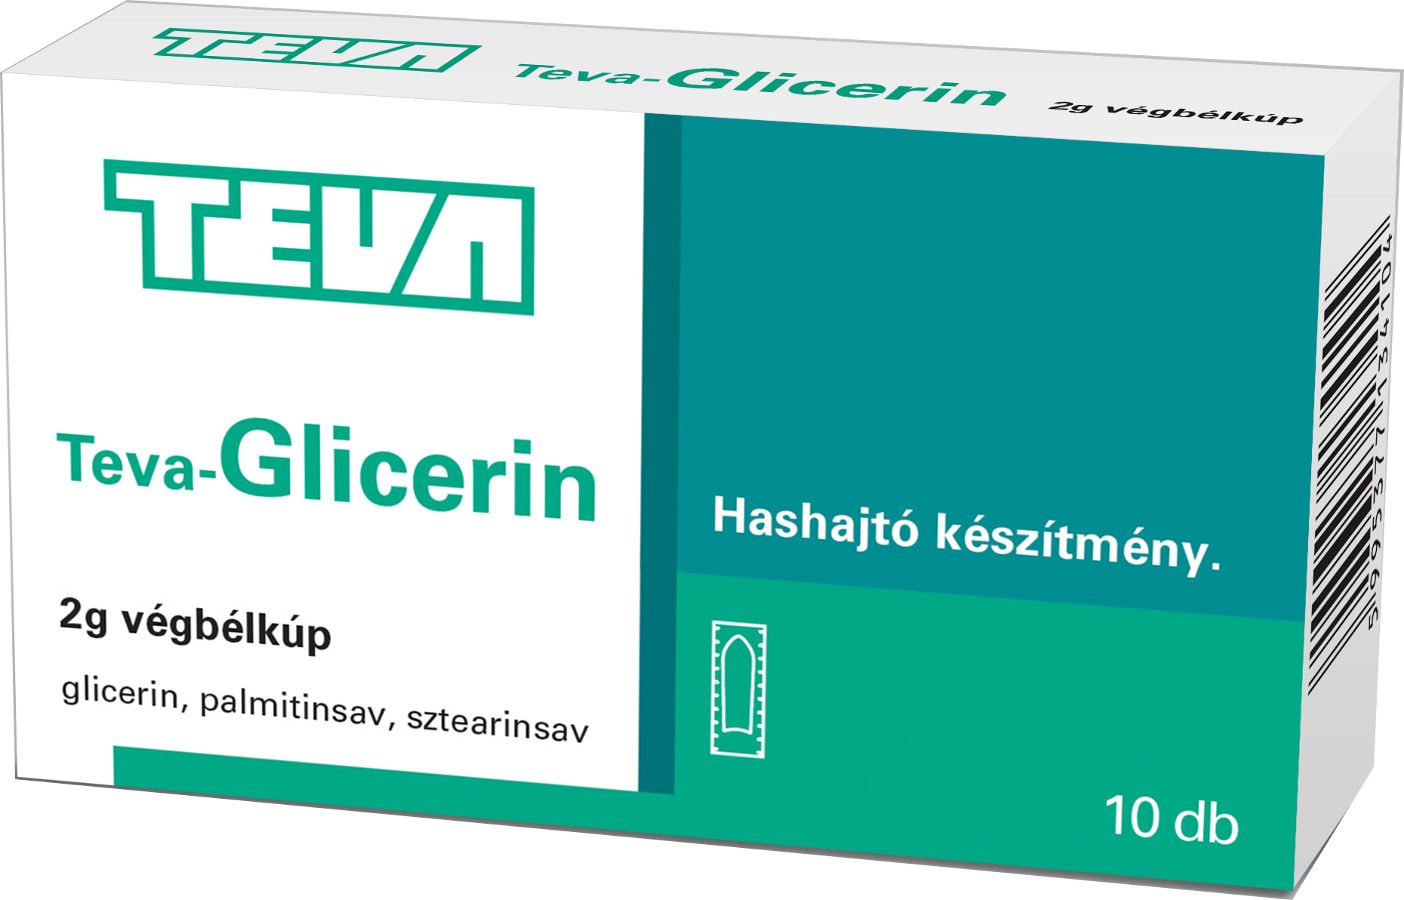 Teva-Glicerin 2 g végbélkúp